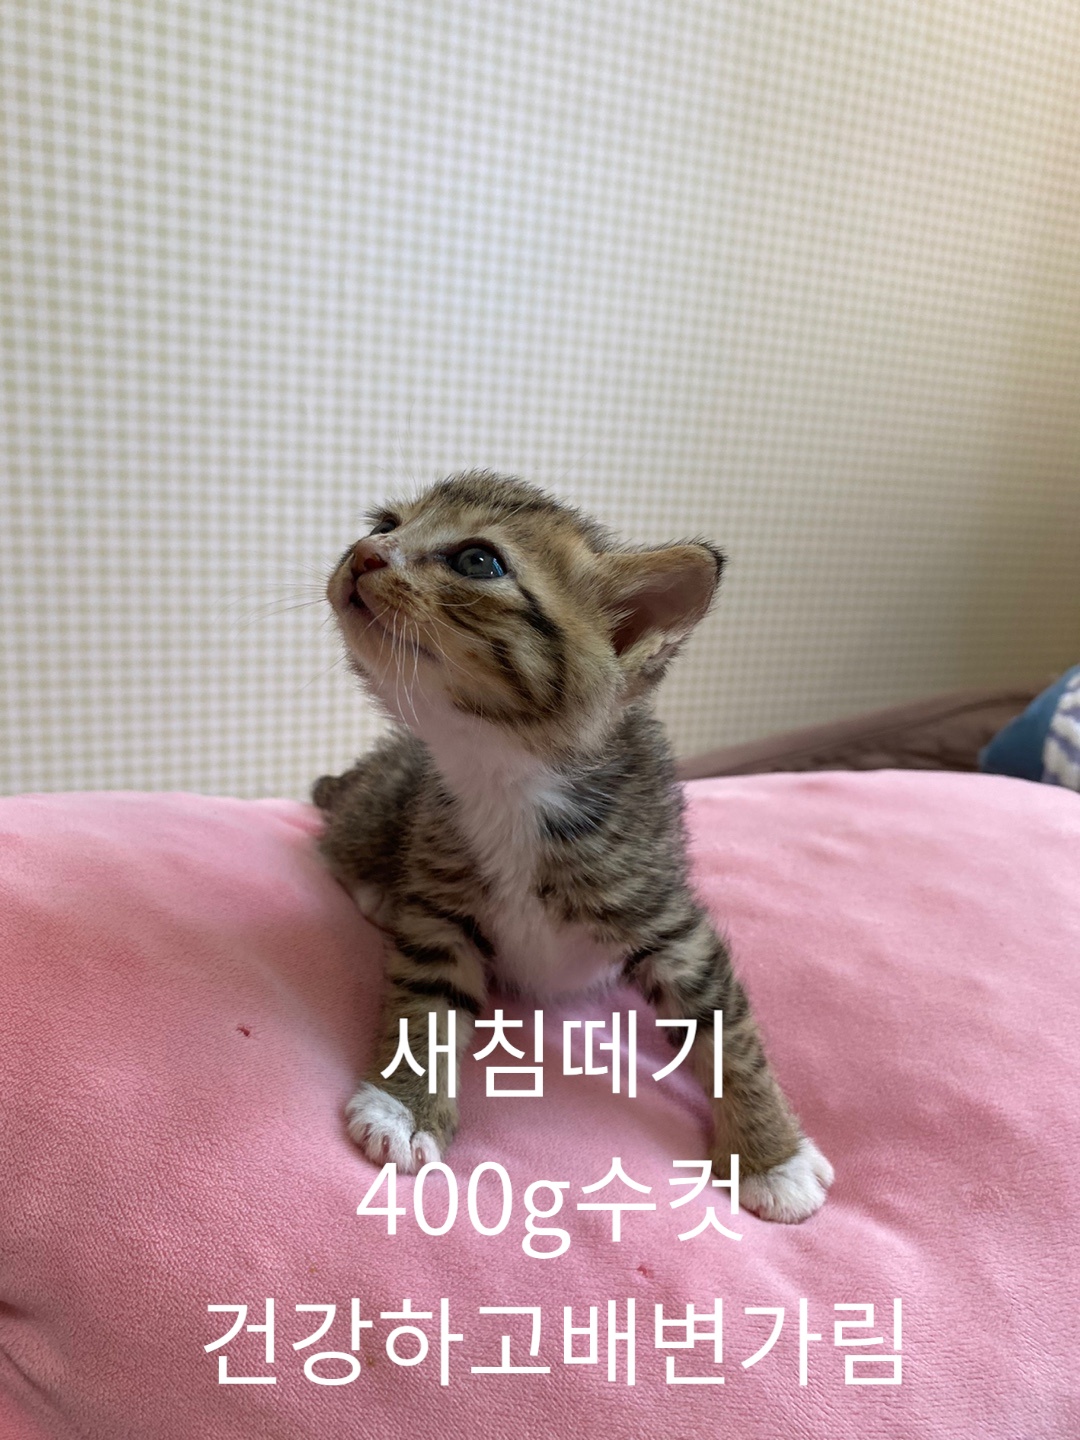 공고 번호가 경북-성주-2024-00222인 한국 고양이 동물 사진